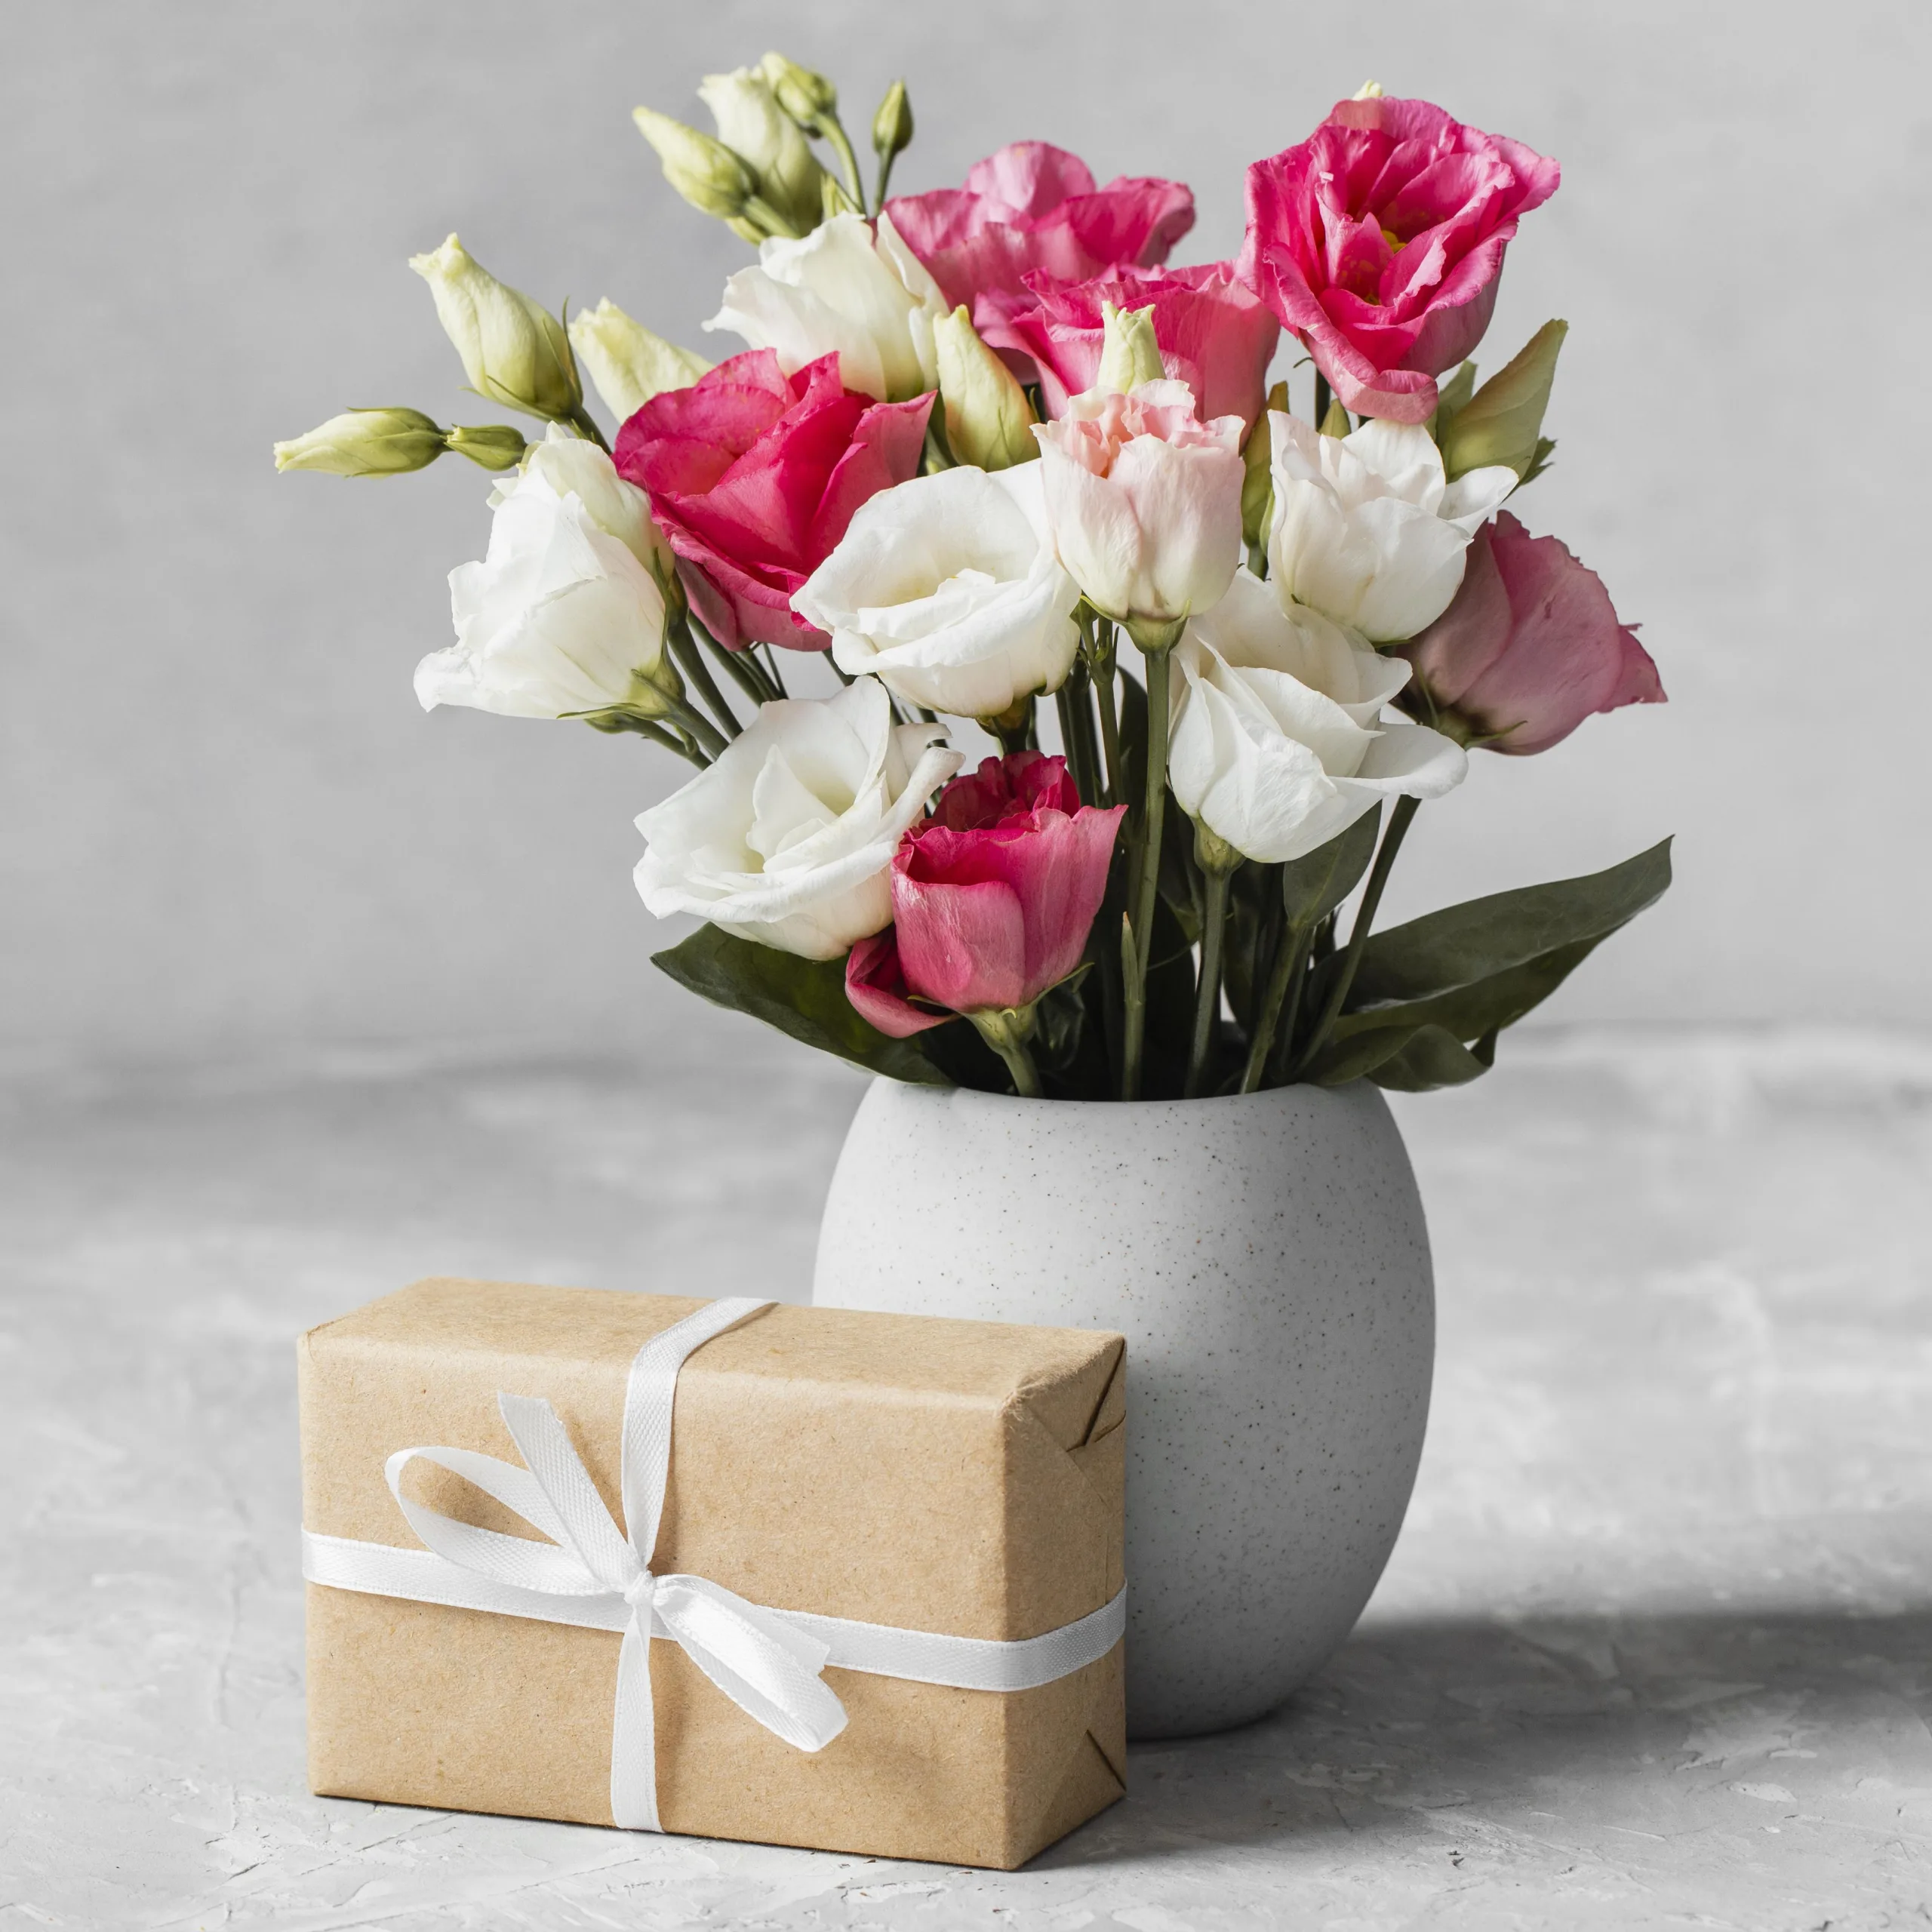 Цветы и букеты - классический способ выразить любовь